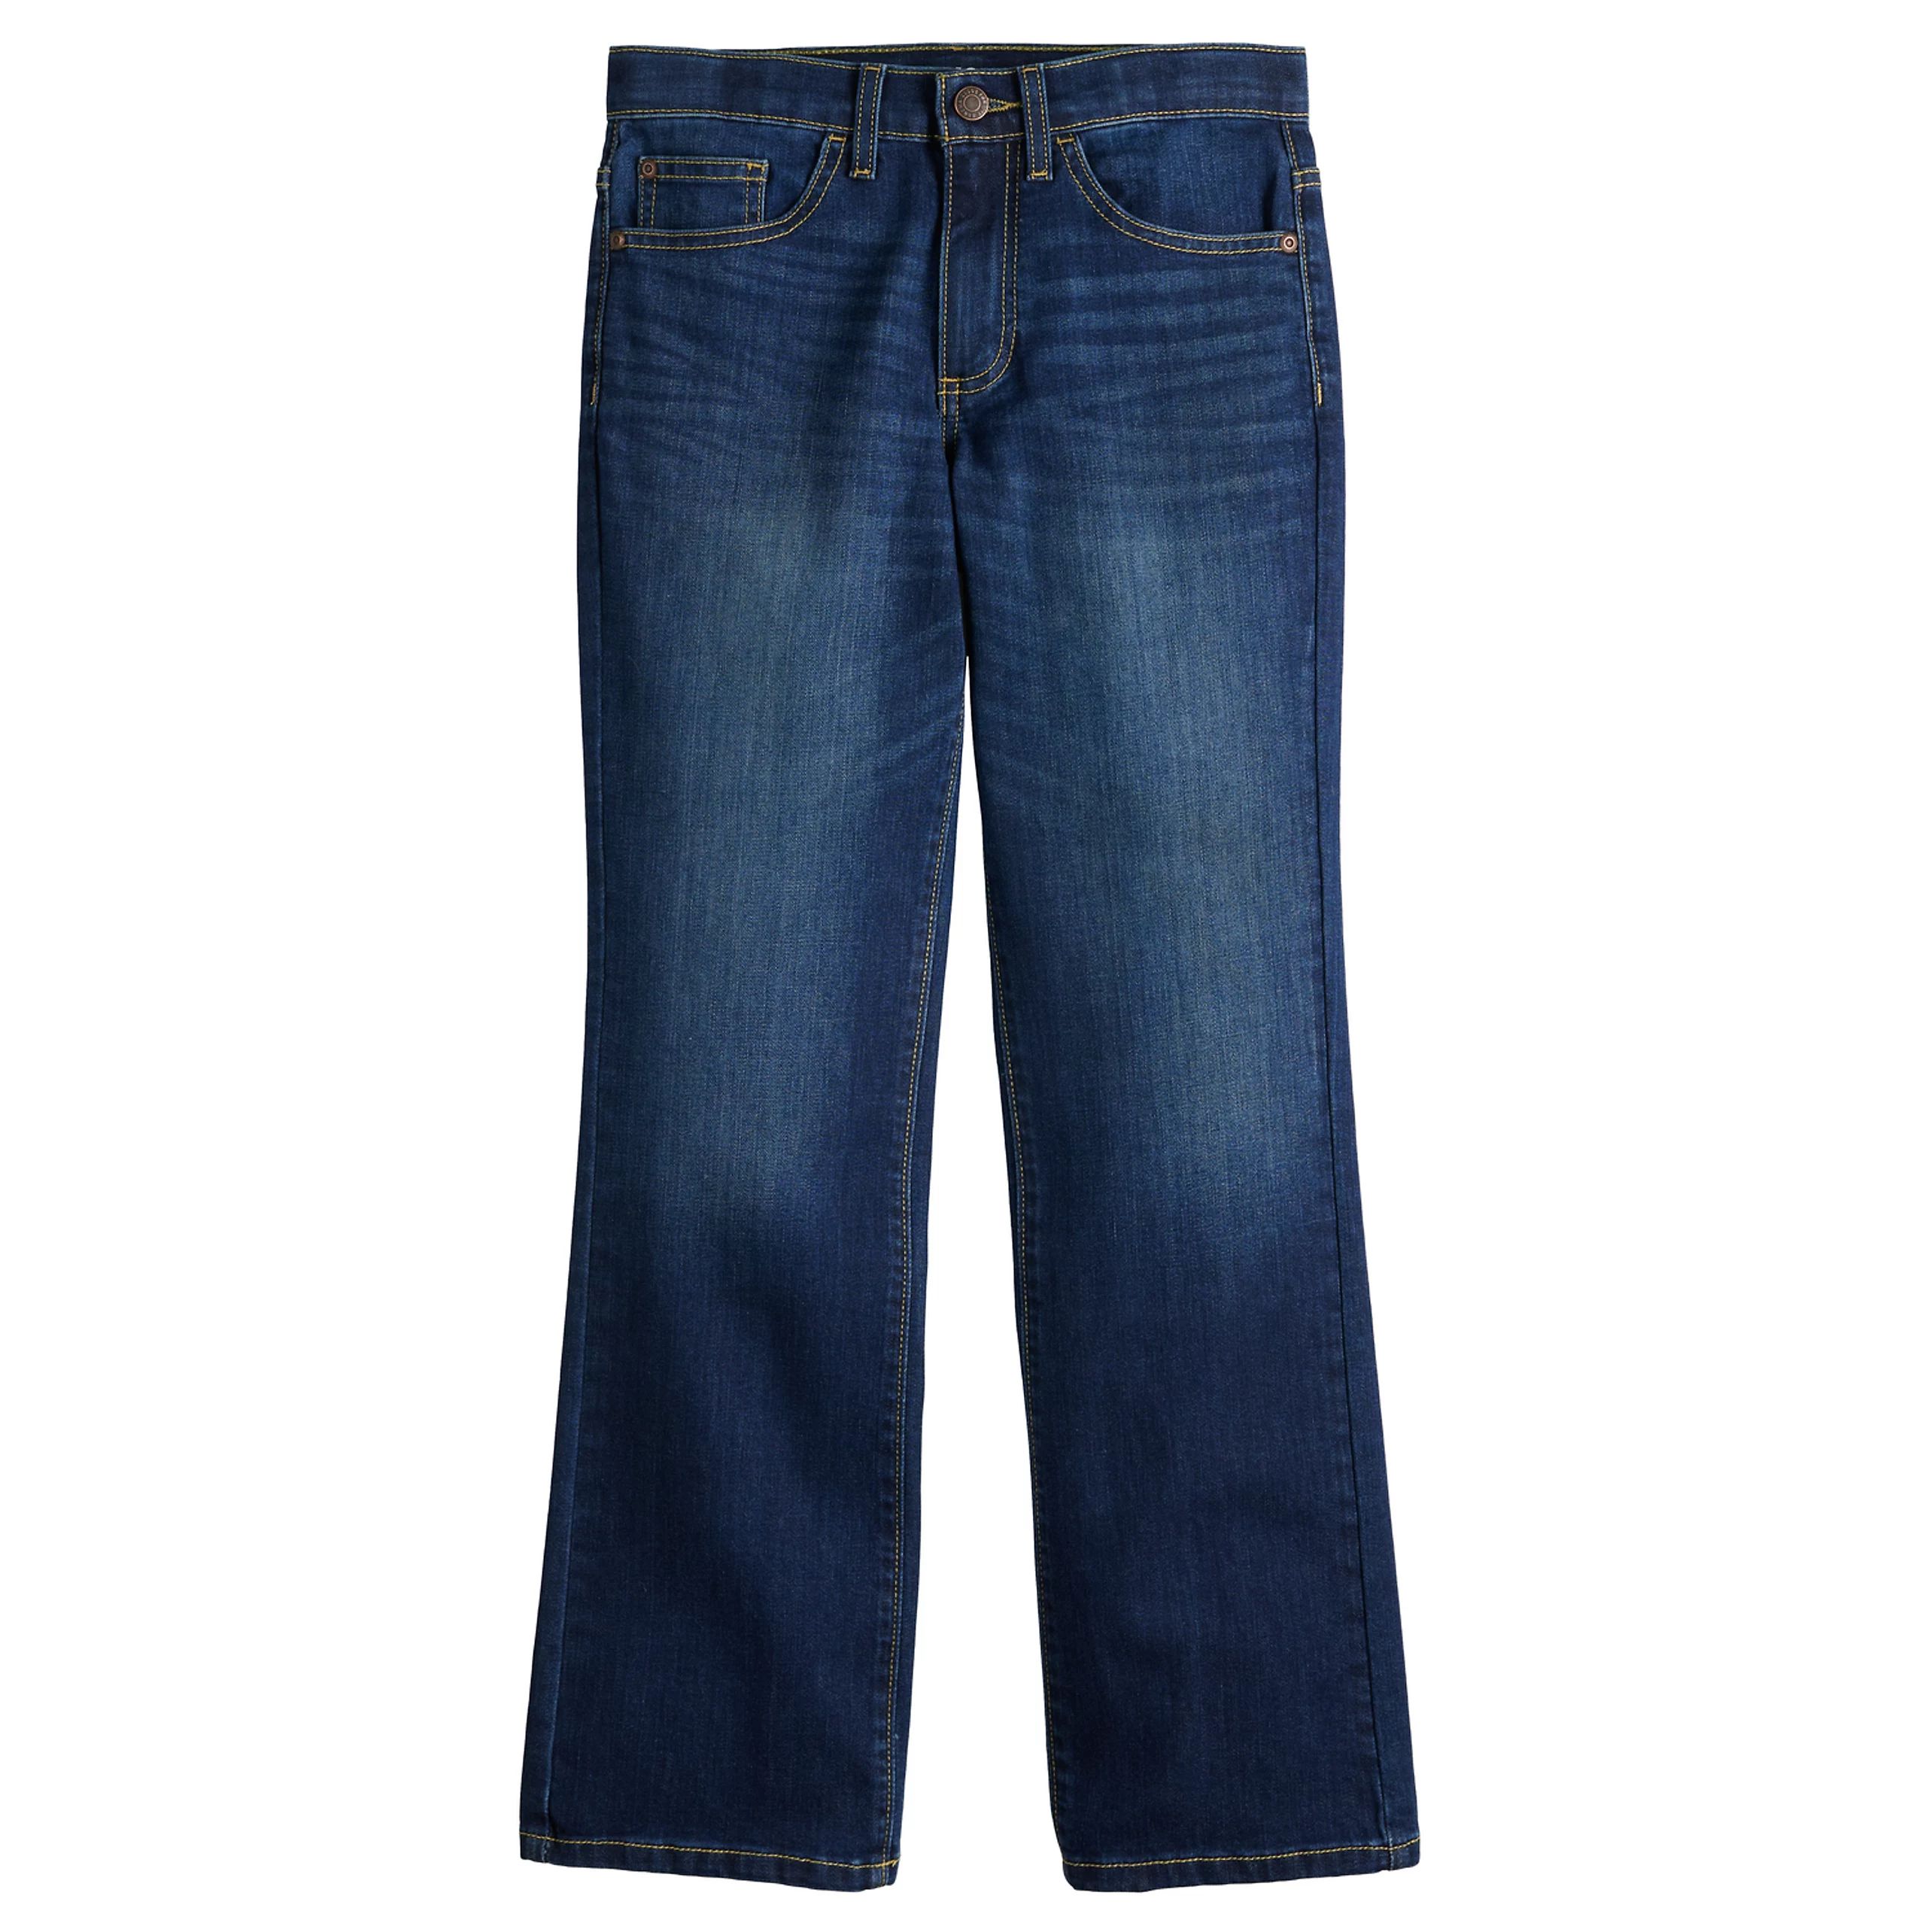 Boys 7-20 Sonoma Goods For Life® Flexwear Bootcut Jeans in Regular & Husky | Kohl's